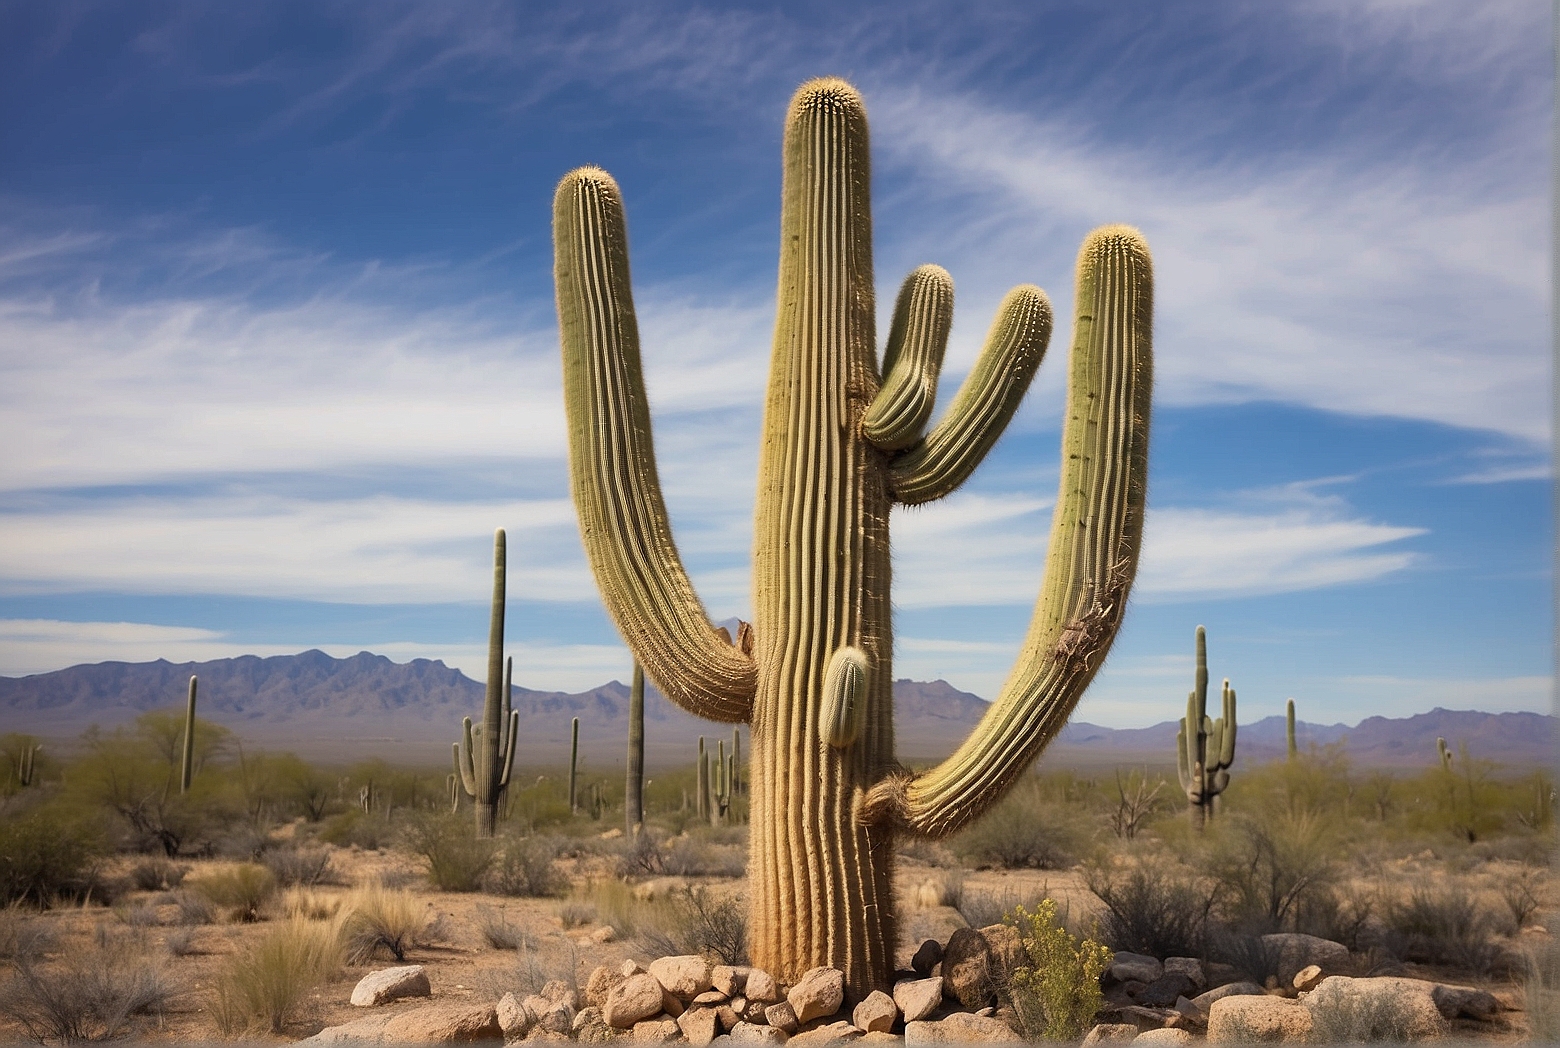 When Do Saguaro Cacti Develop Arms?